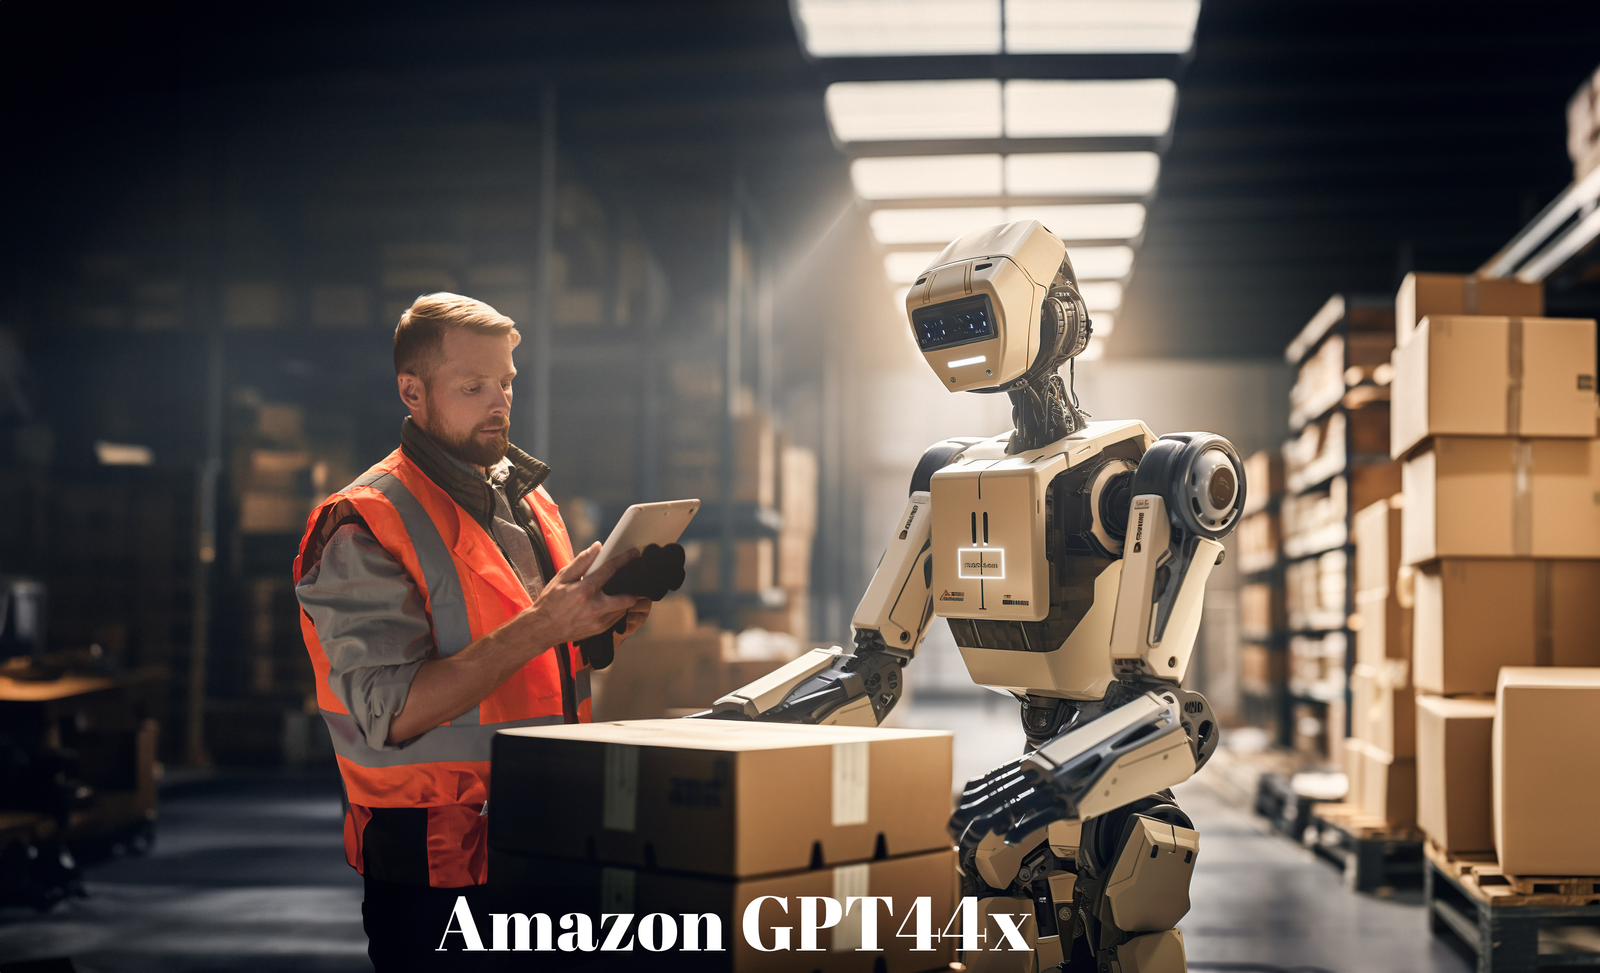 Amazon GPT44x